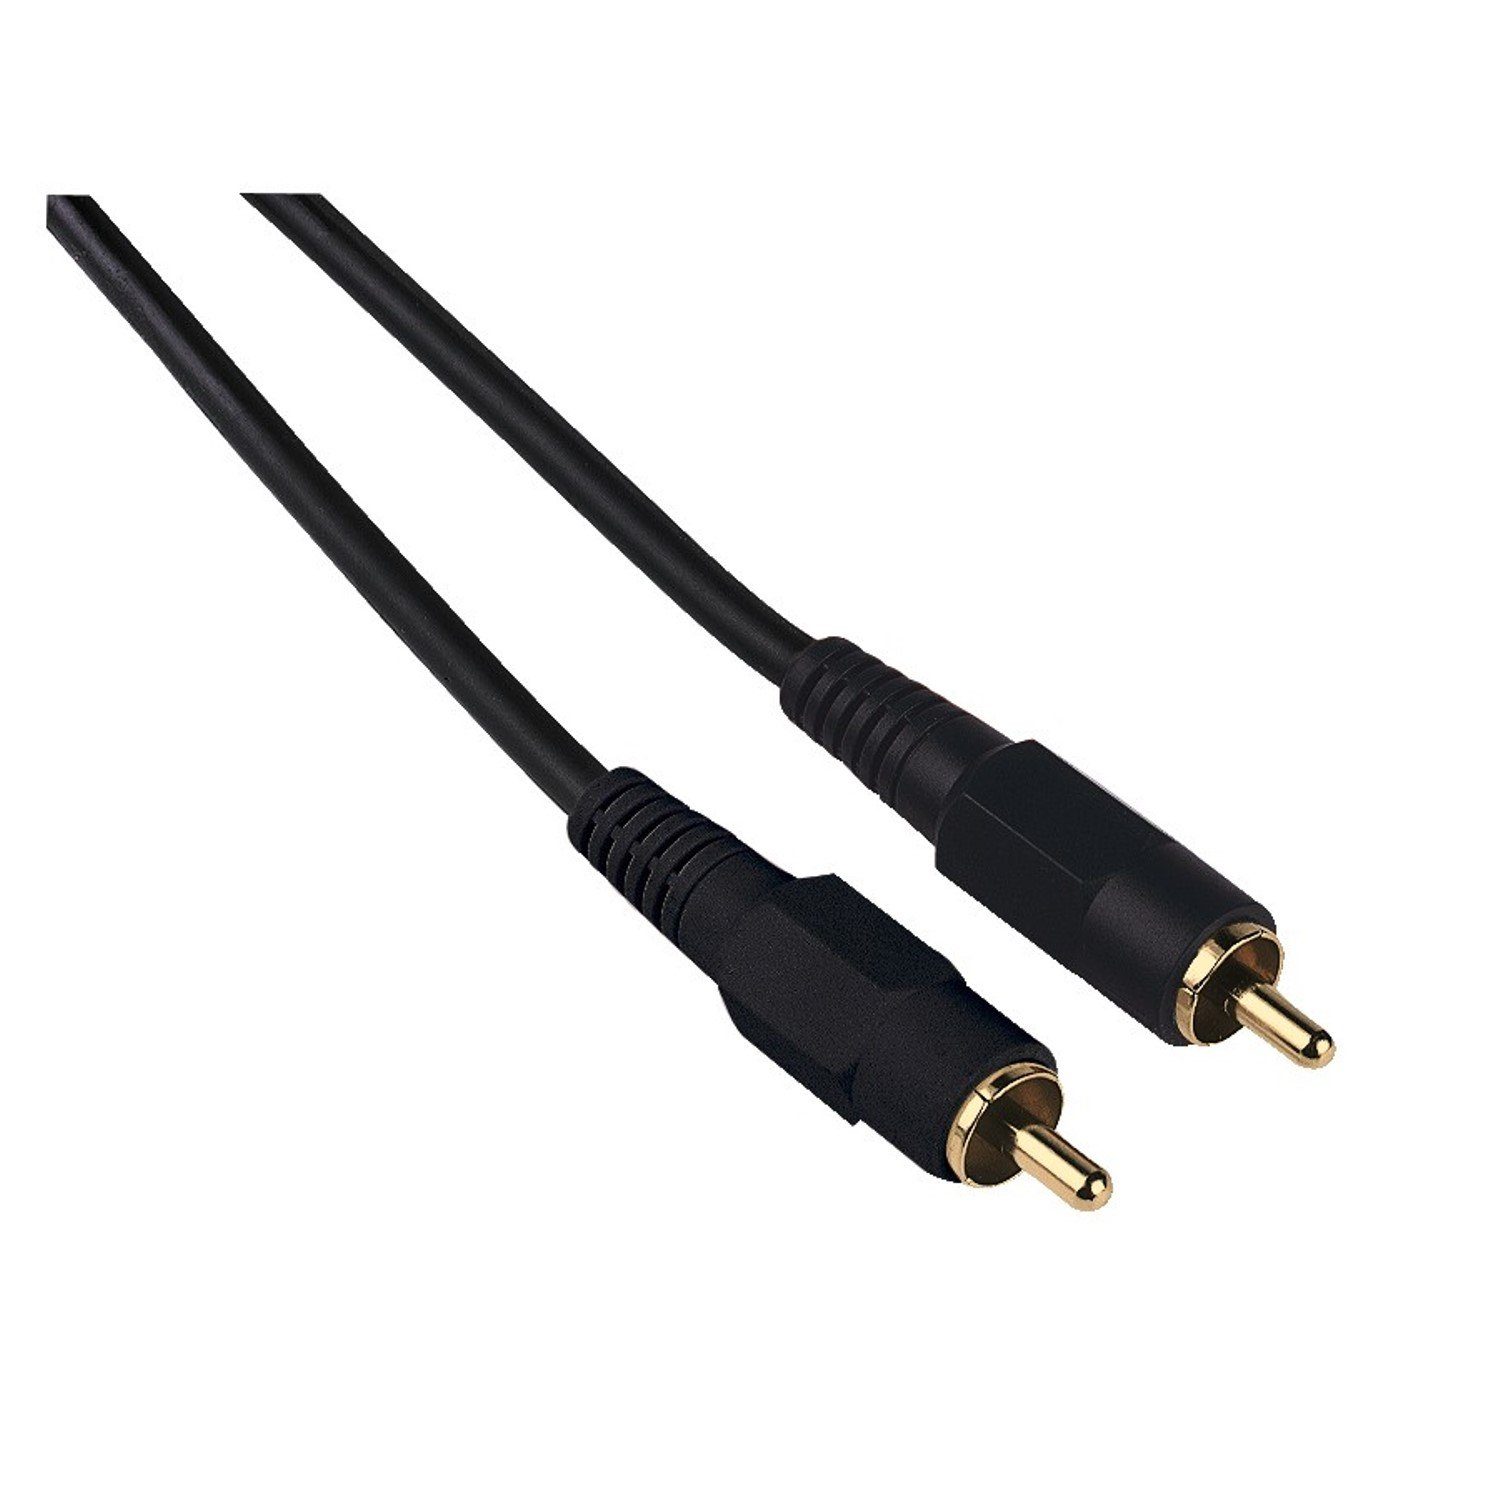 Hama Digital Cinch-Kabel 1:1 Koaxial Audio Audio-Kabel, Cinch, Cinch, Audio-Kabel mit RCA- Chinch-Anschluss, für Verstärker, Receiver etc